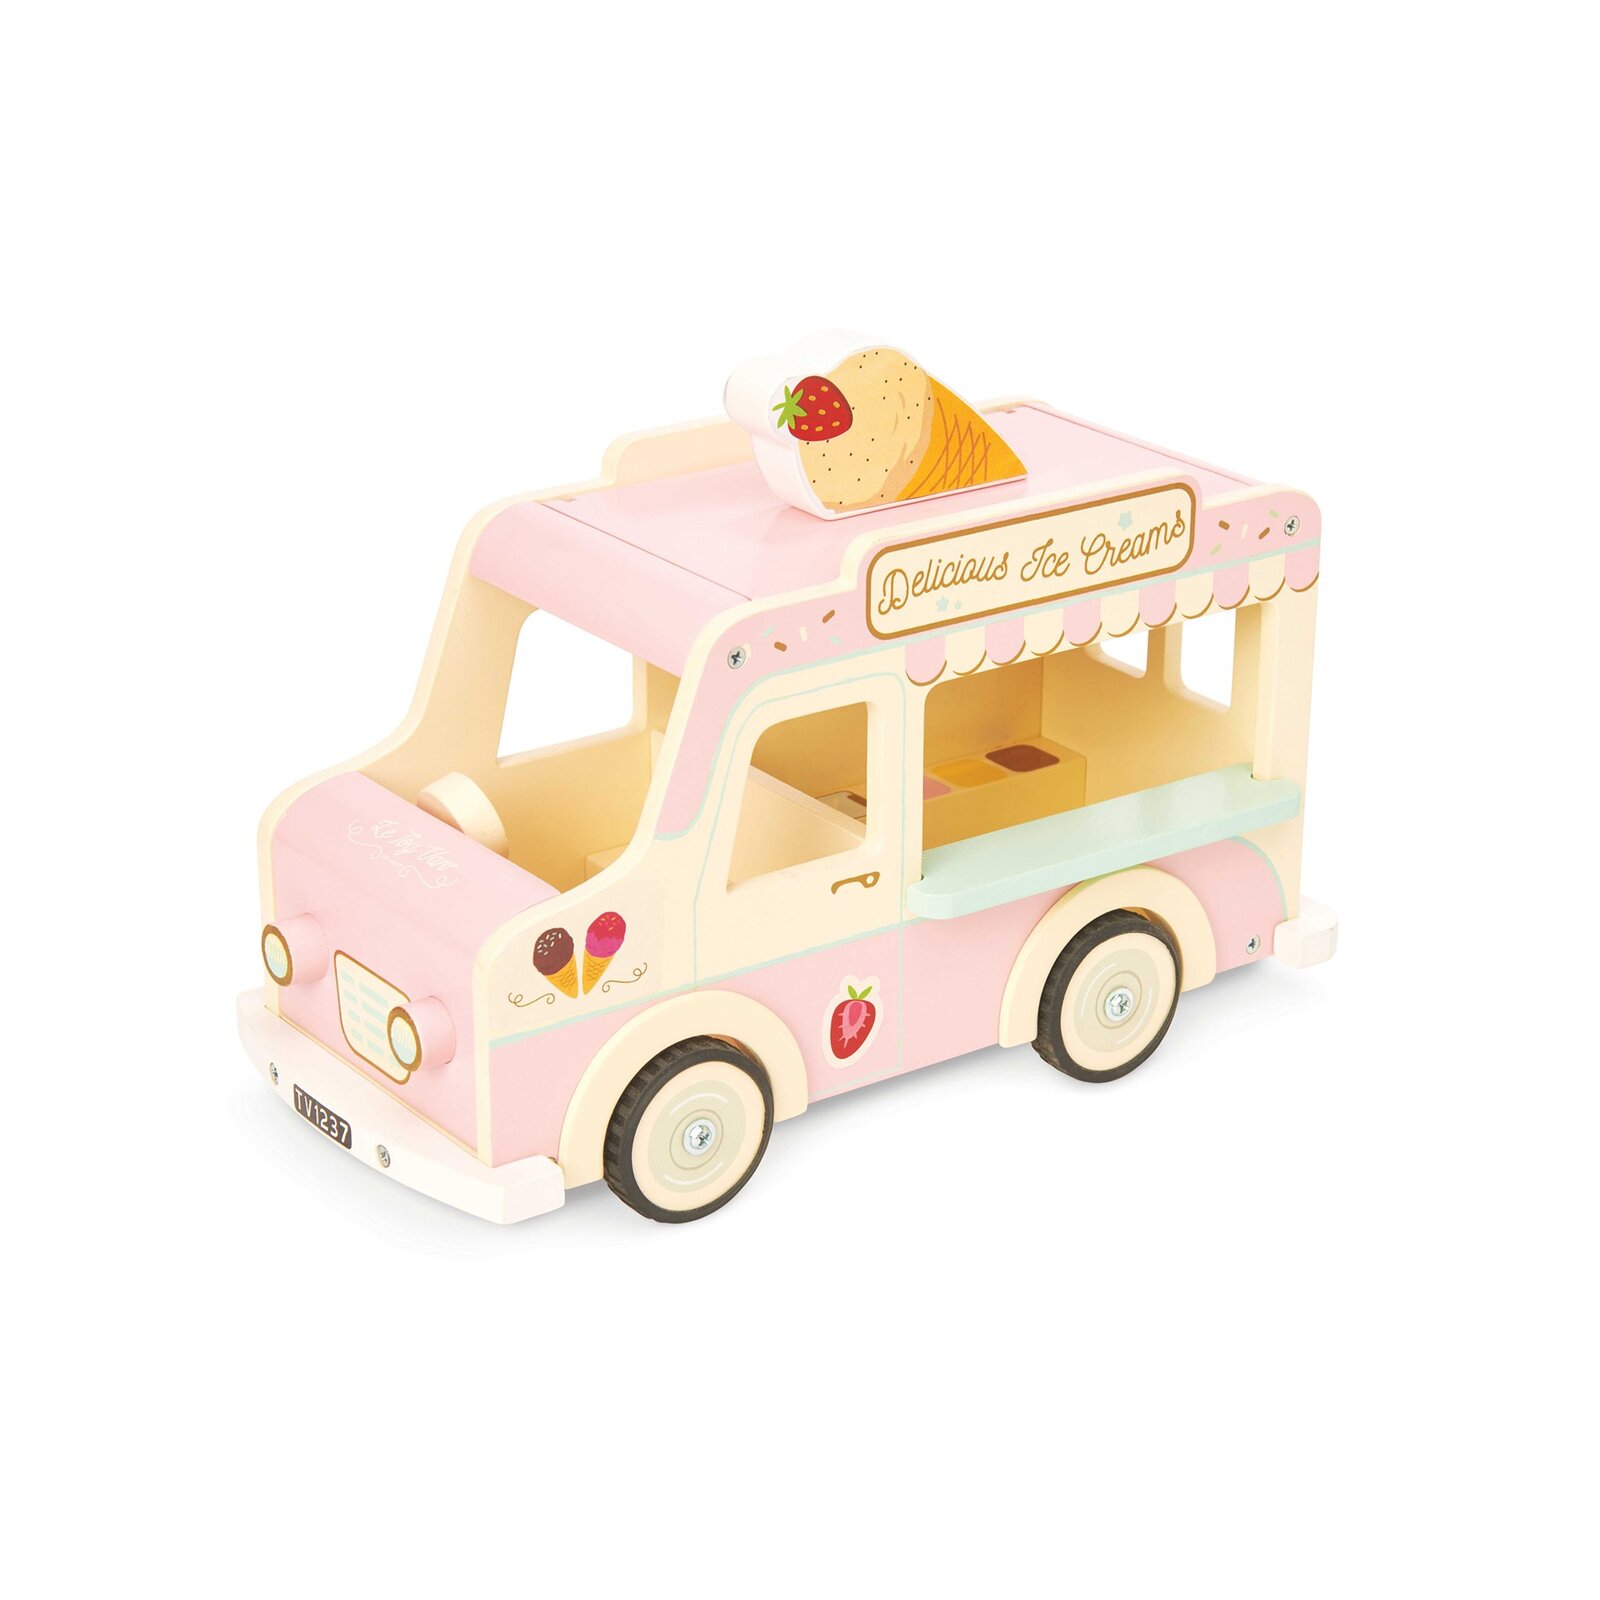 Le Toy Van Wooden Ice Cream Van | The 